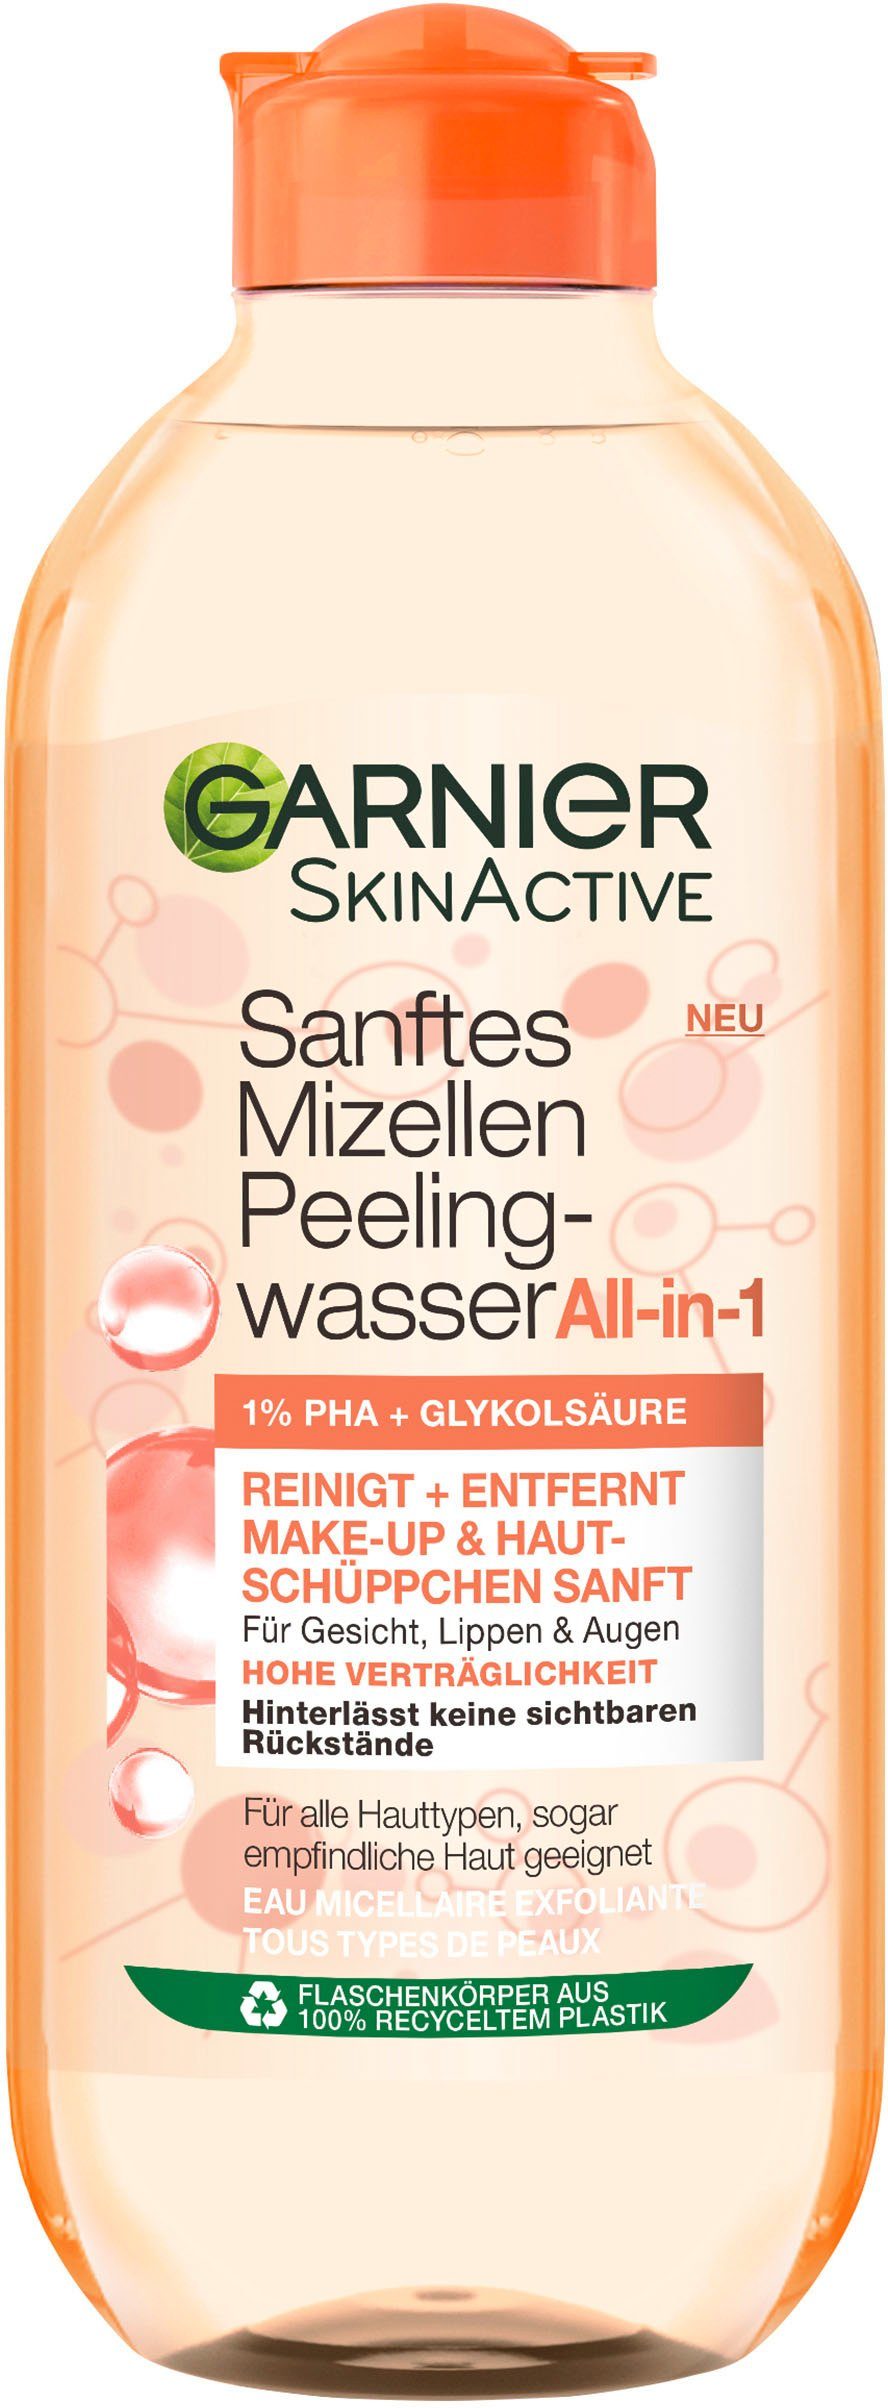 GARNIER Gesichtspflege Sanftes Mizellen Peelingwasser Garnier